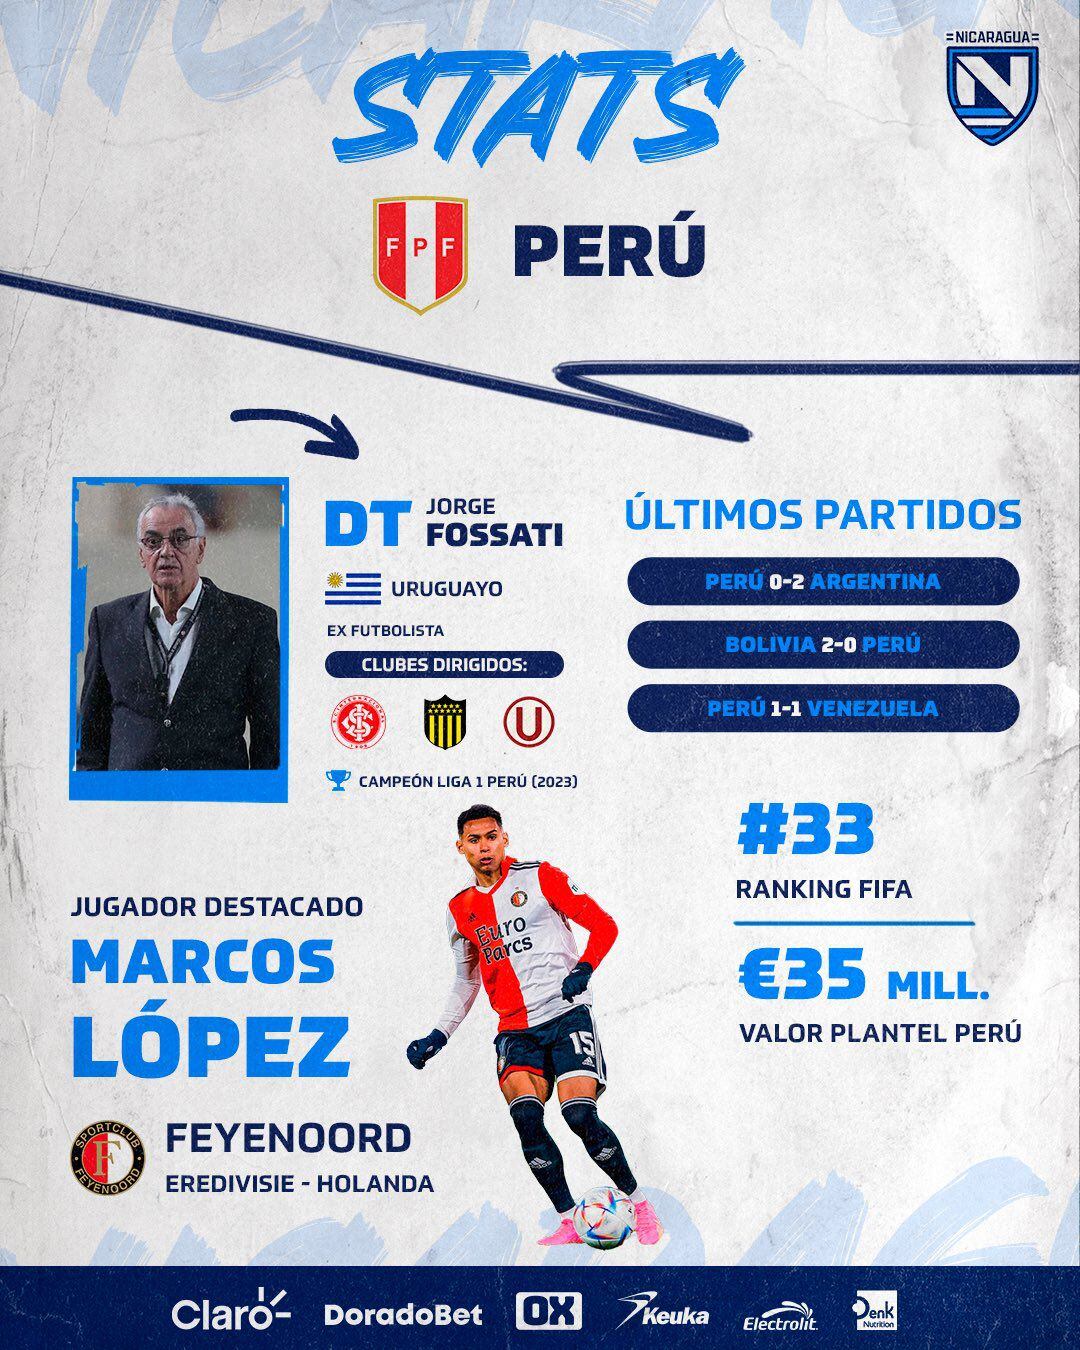 Nicaragua publicó infografía sobre la selección peruana previo al amistoso en Matute.